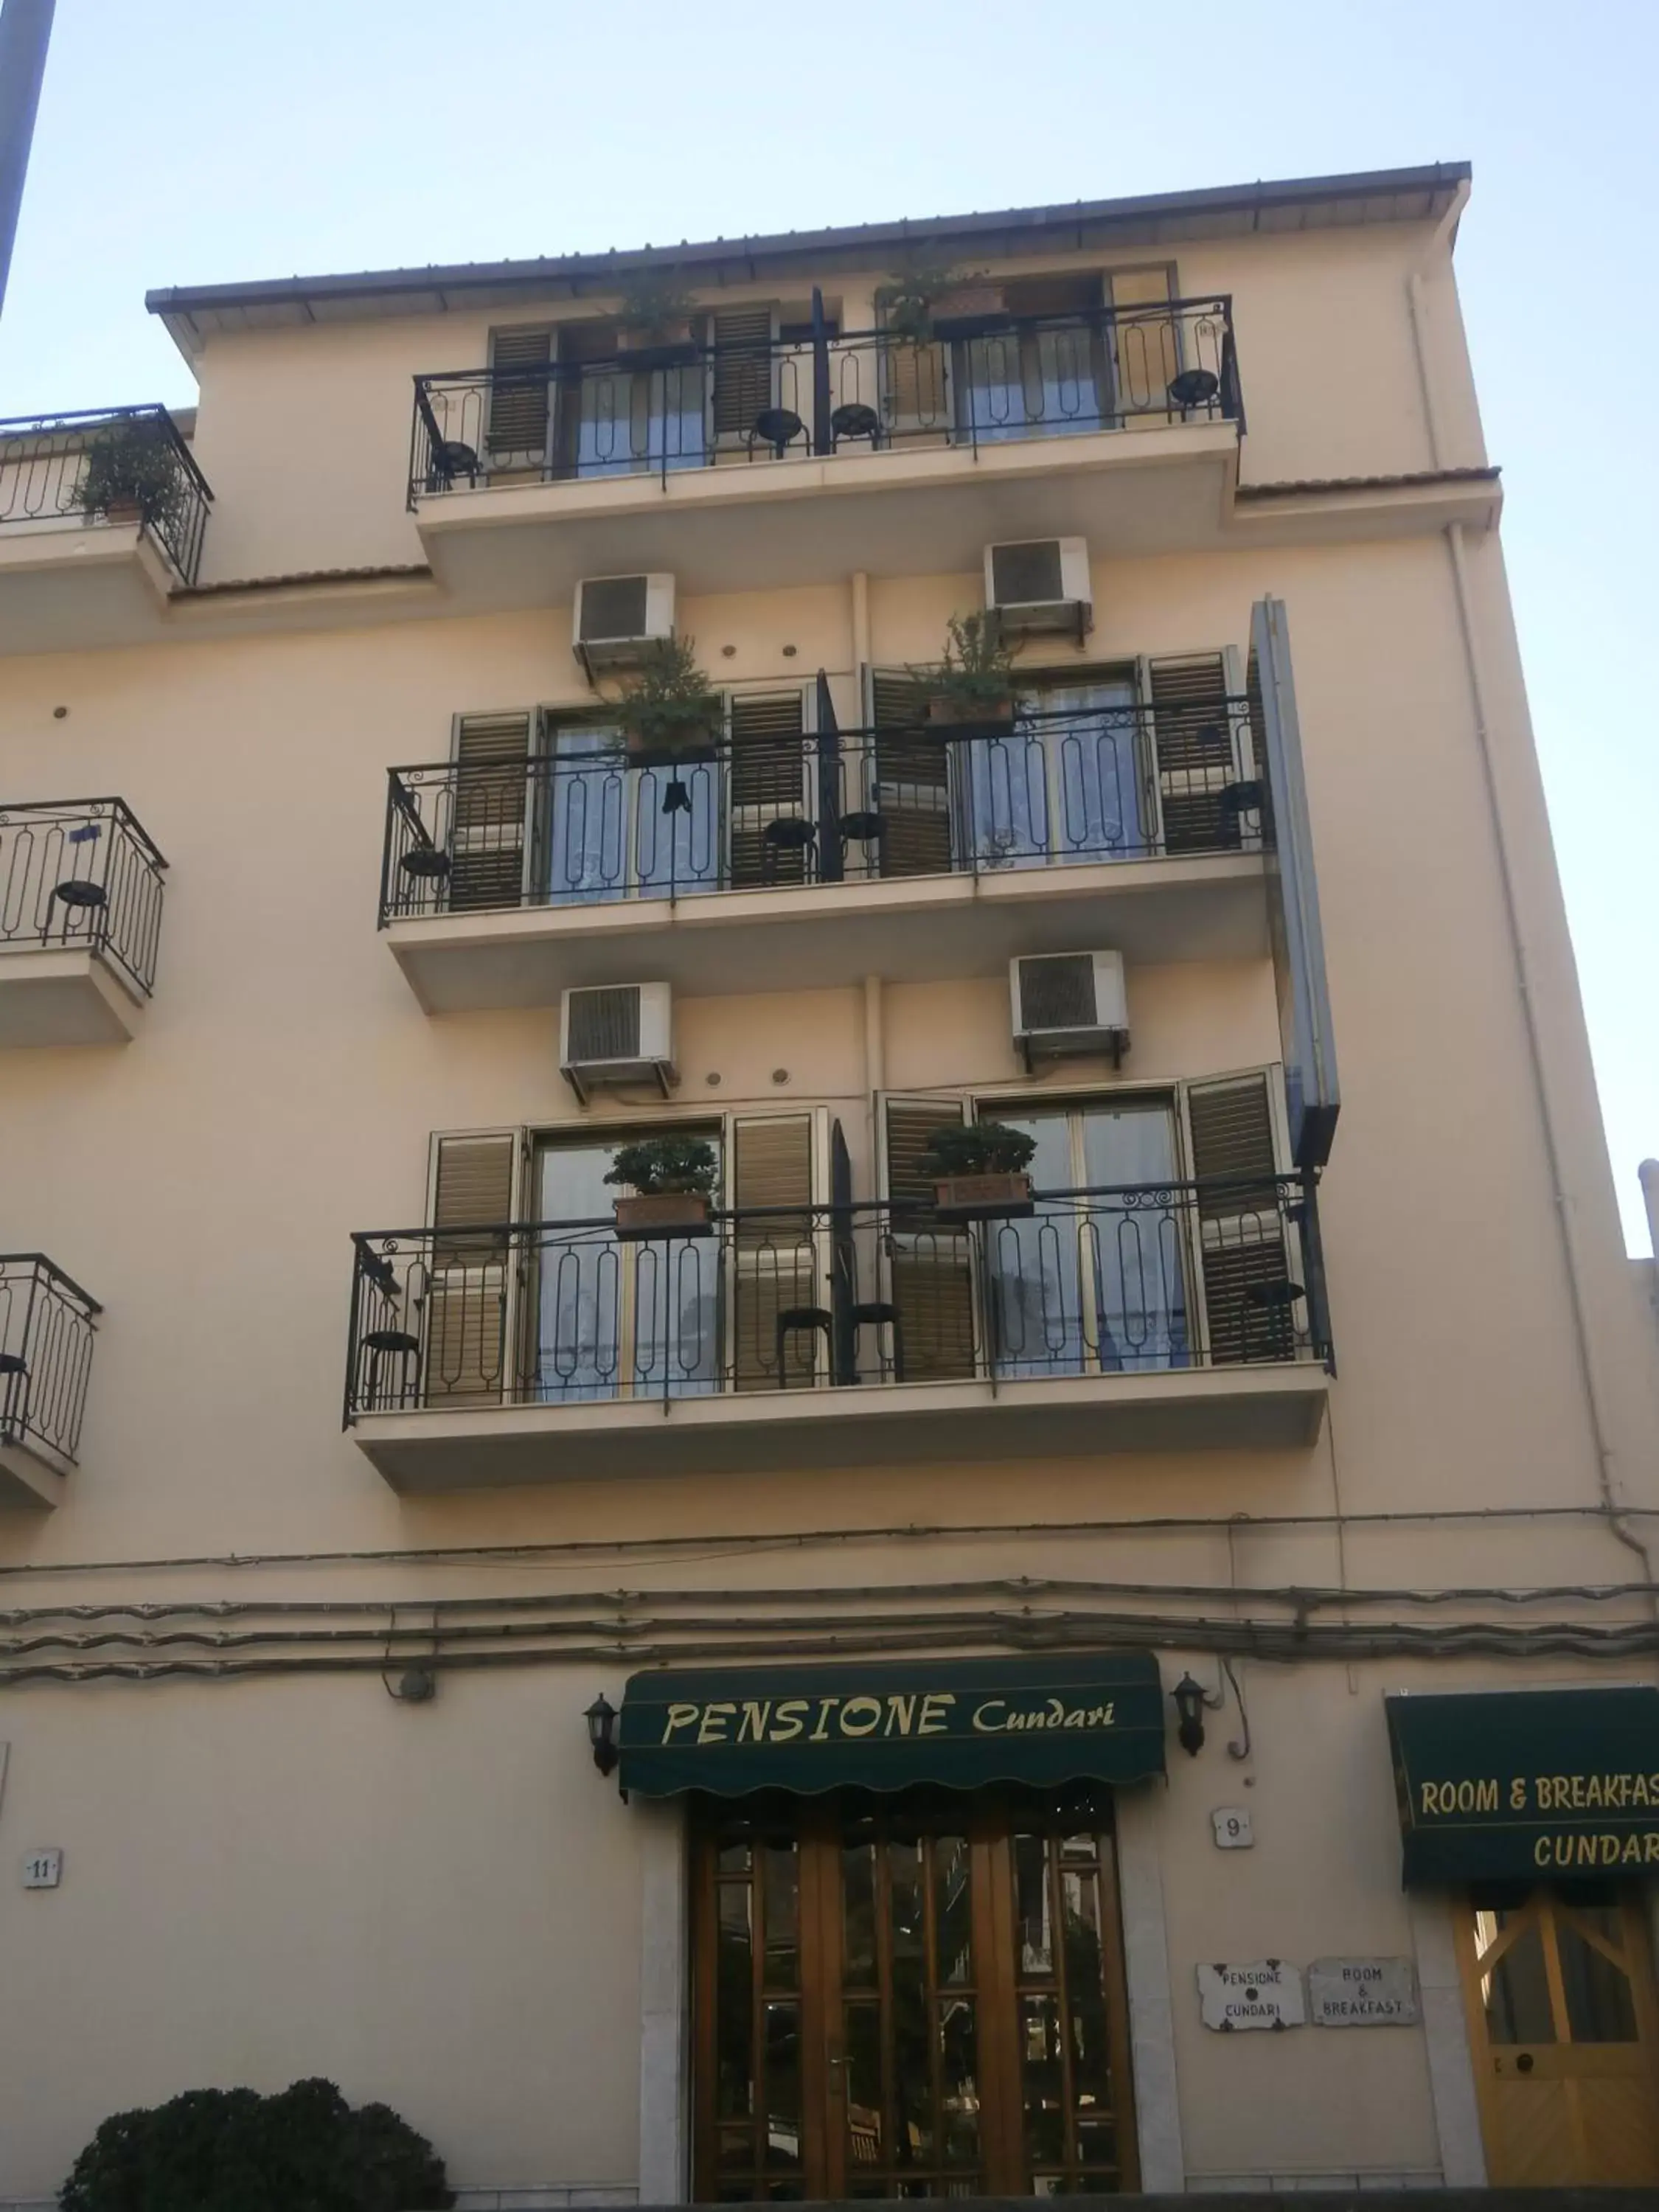 Facade/entrance, Property Building in Hotel Pensione Cundari